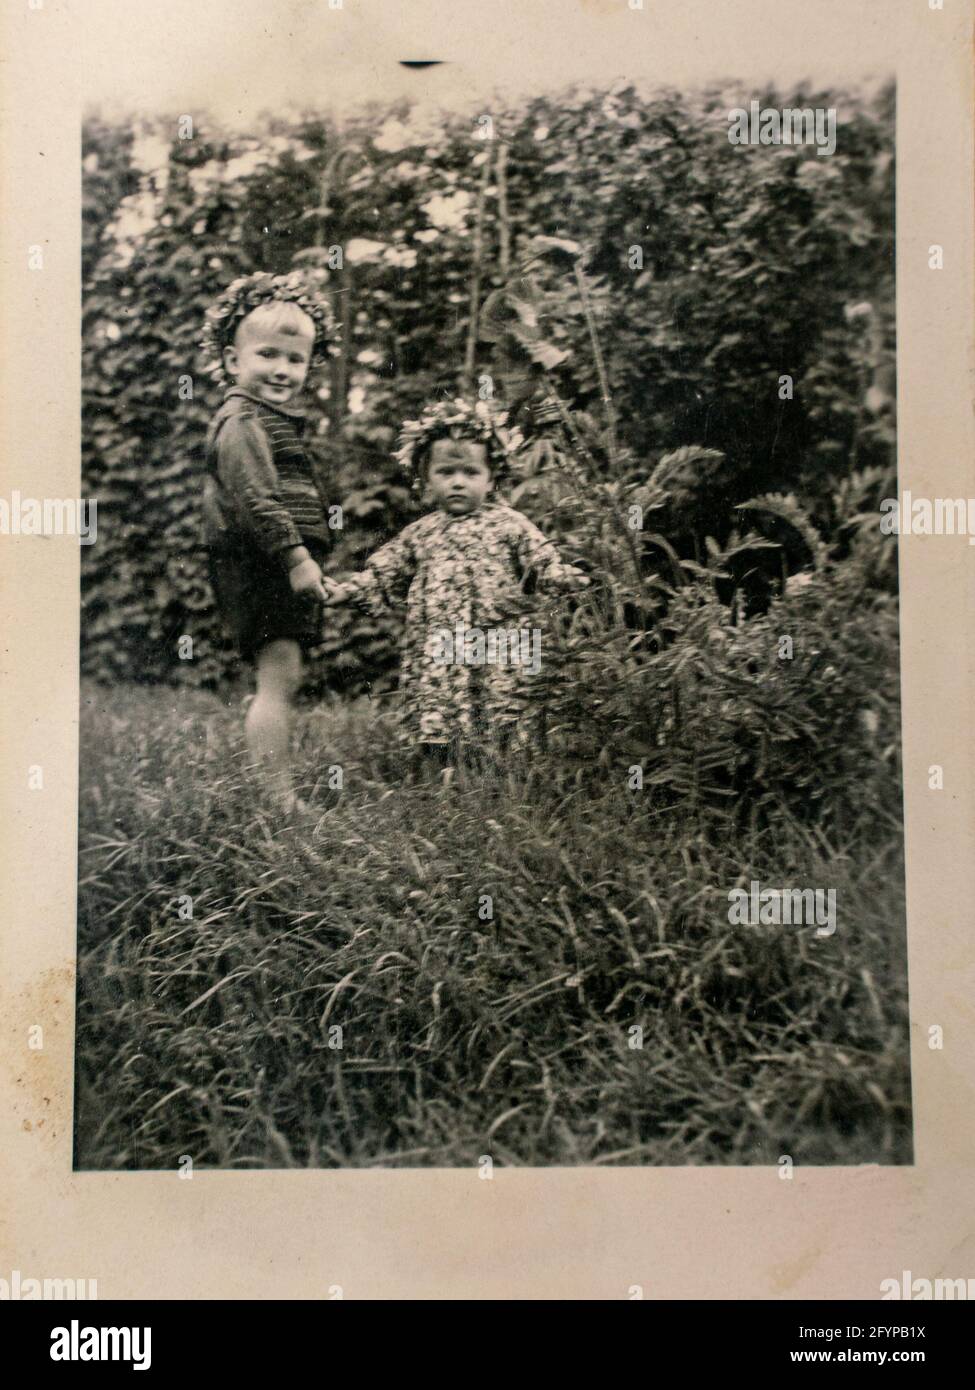 Deutschland - CA. 1930er Jahre: Foto von zwei kleinen Kindern, die im Sommer im Garten stehen. Vintage Archiv Art Deco Ära Fotografie Stockfoto